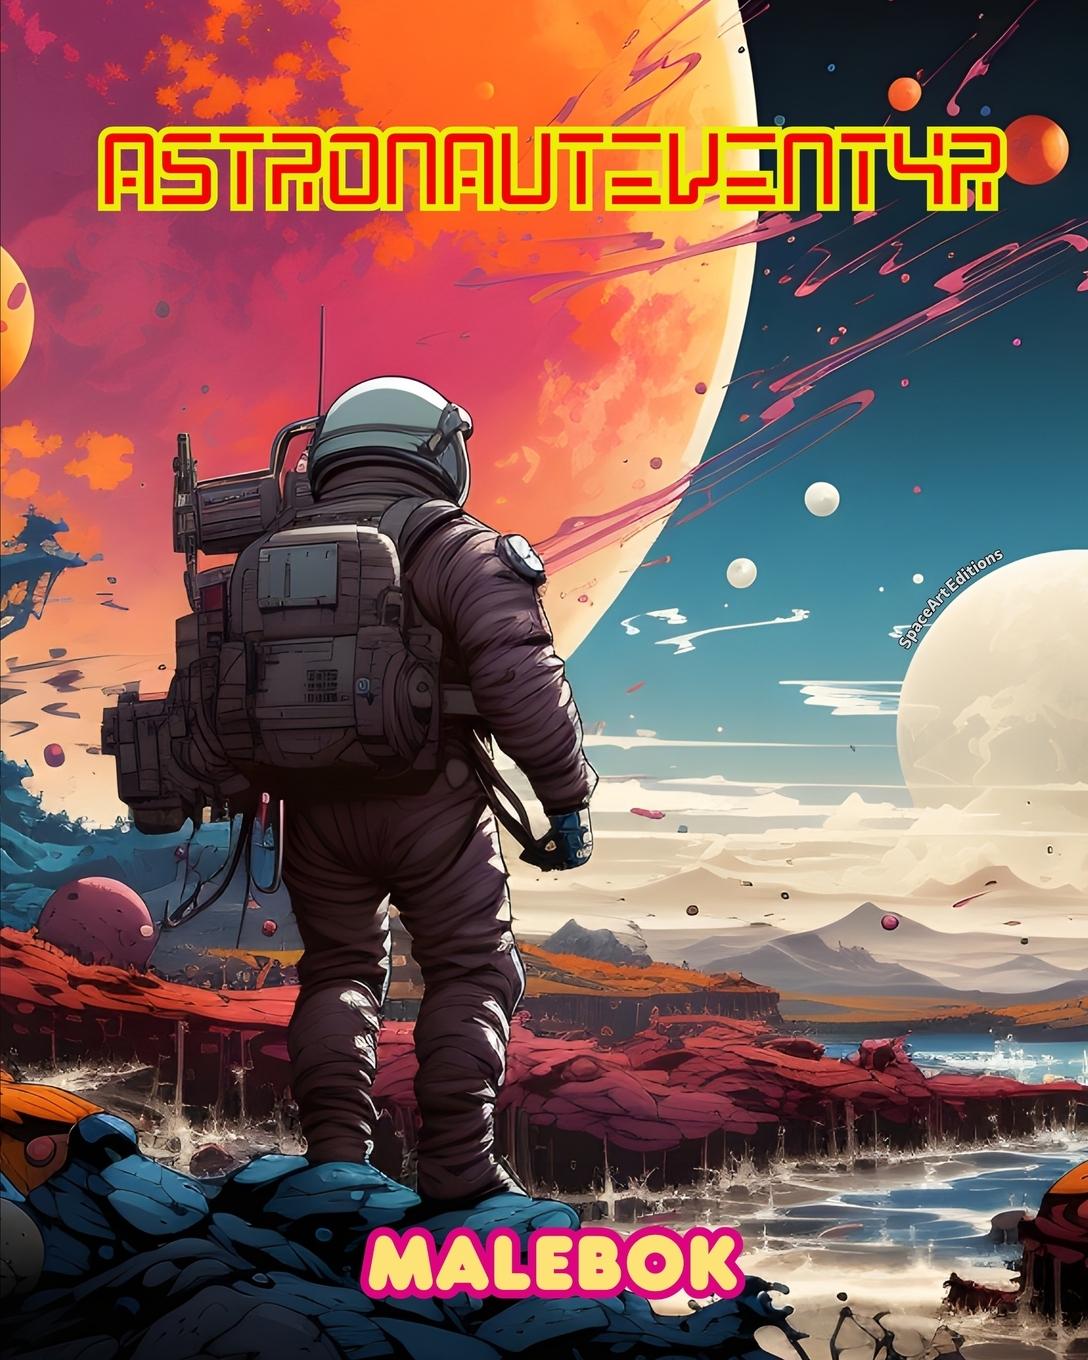 Kniha Astronauteventyr - Malebok - Kunstnerisk samling av romfartsmotiver 